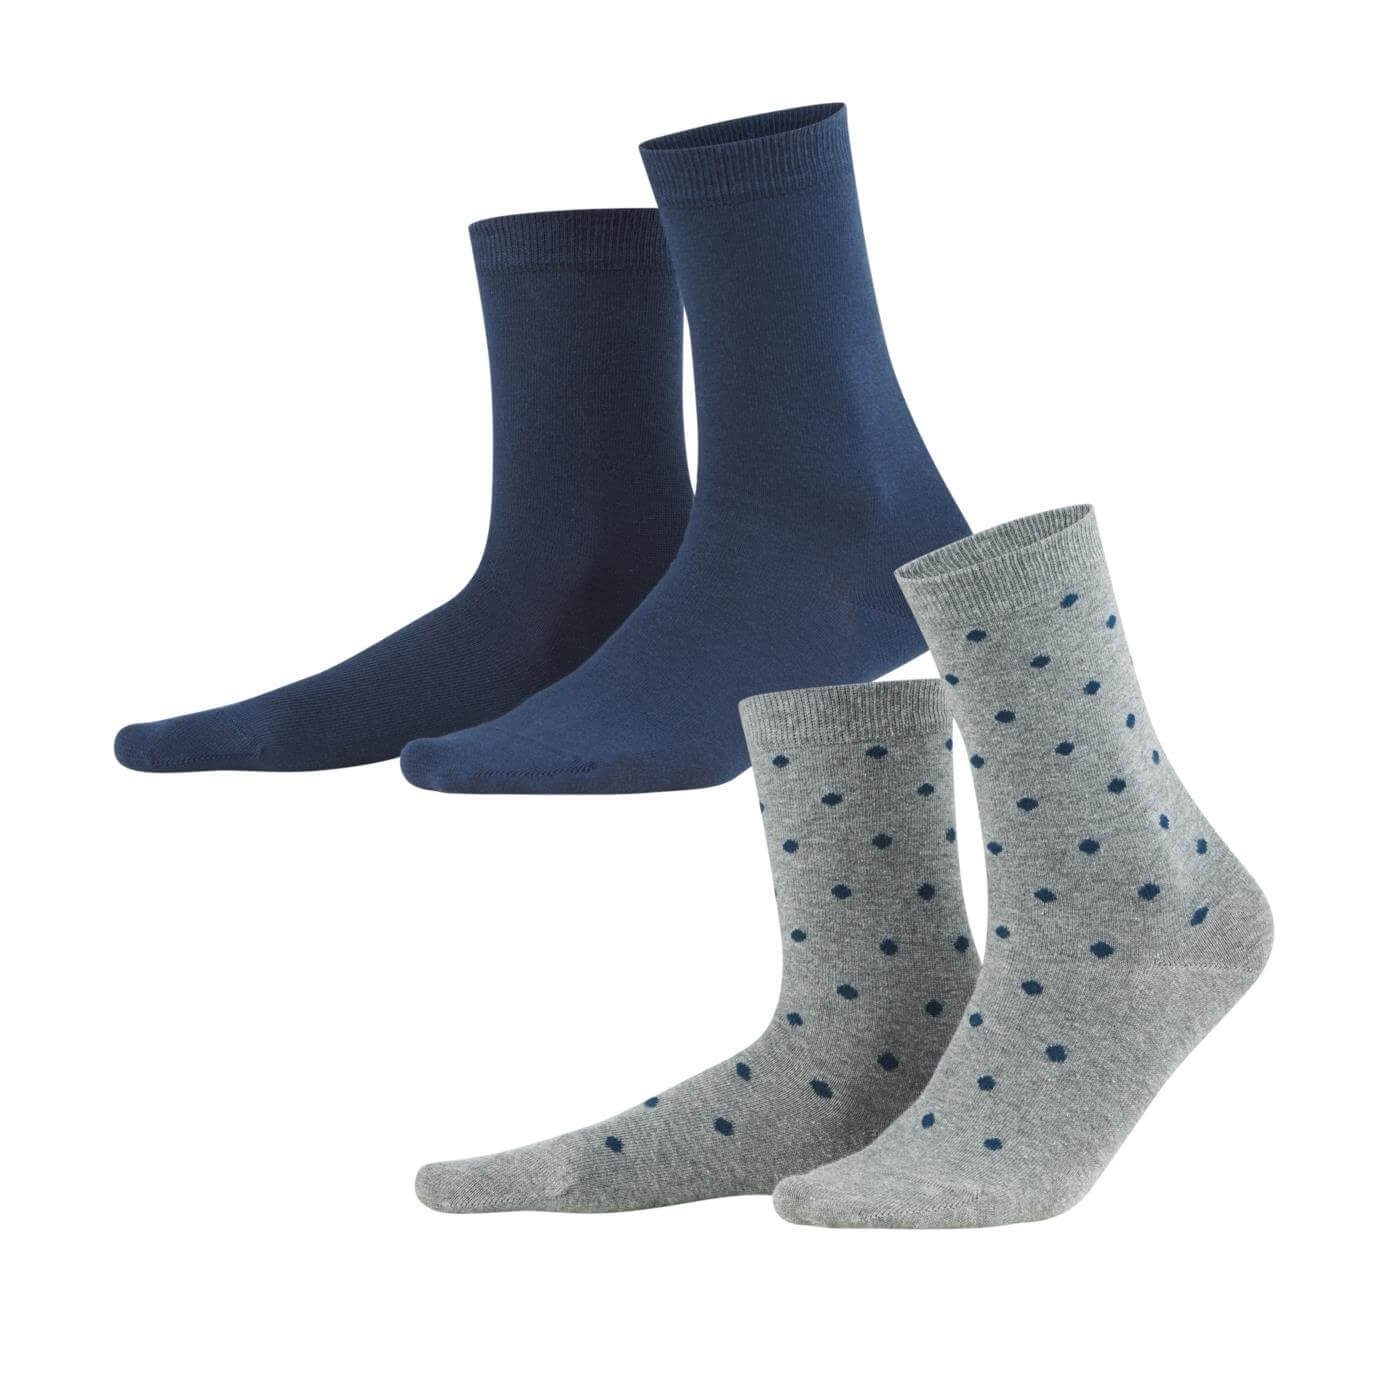 LIVING CRAFTS Socken BETTINA Einmal dezent gepunktet, einmal im passenden Uni-Ton Night Blue Dots